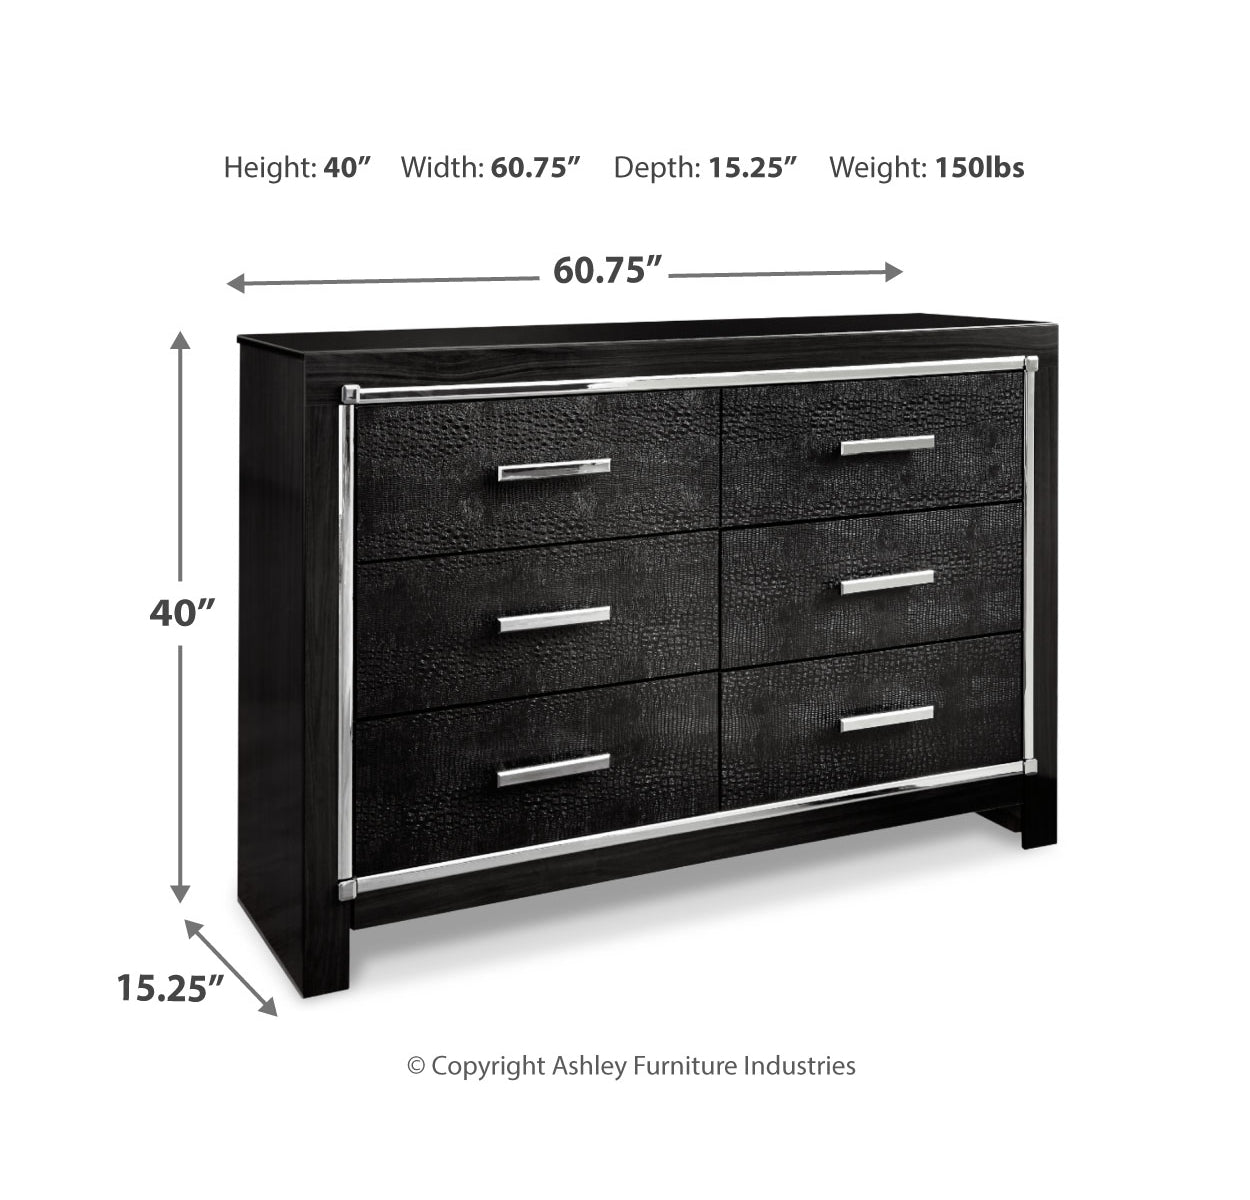 Kaydell Queen Upholstered Panel Storage Platform Bed with Dresser